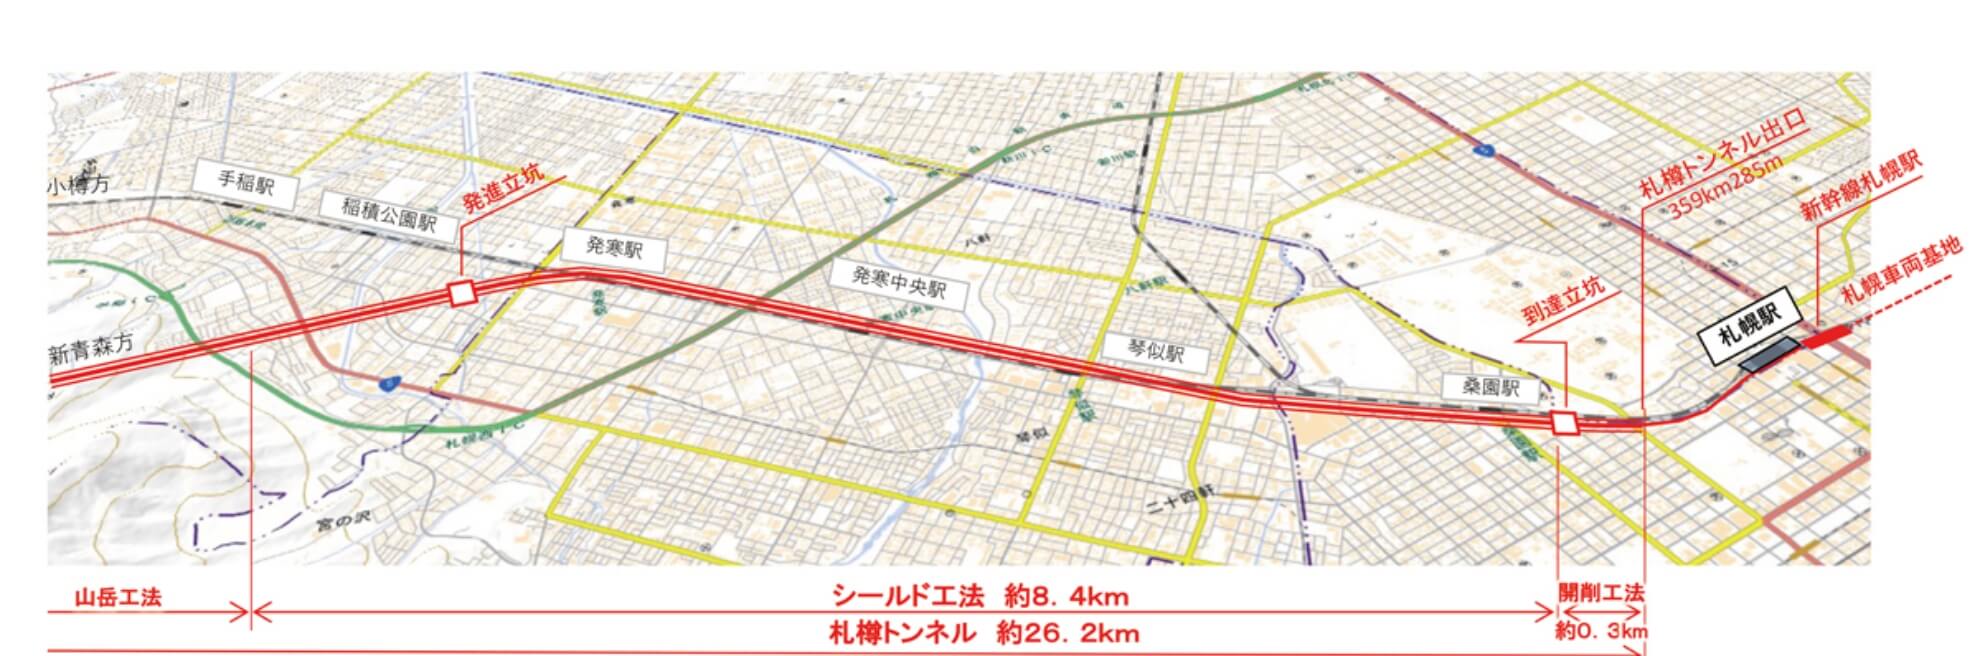 札幌市街地の平面略図